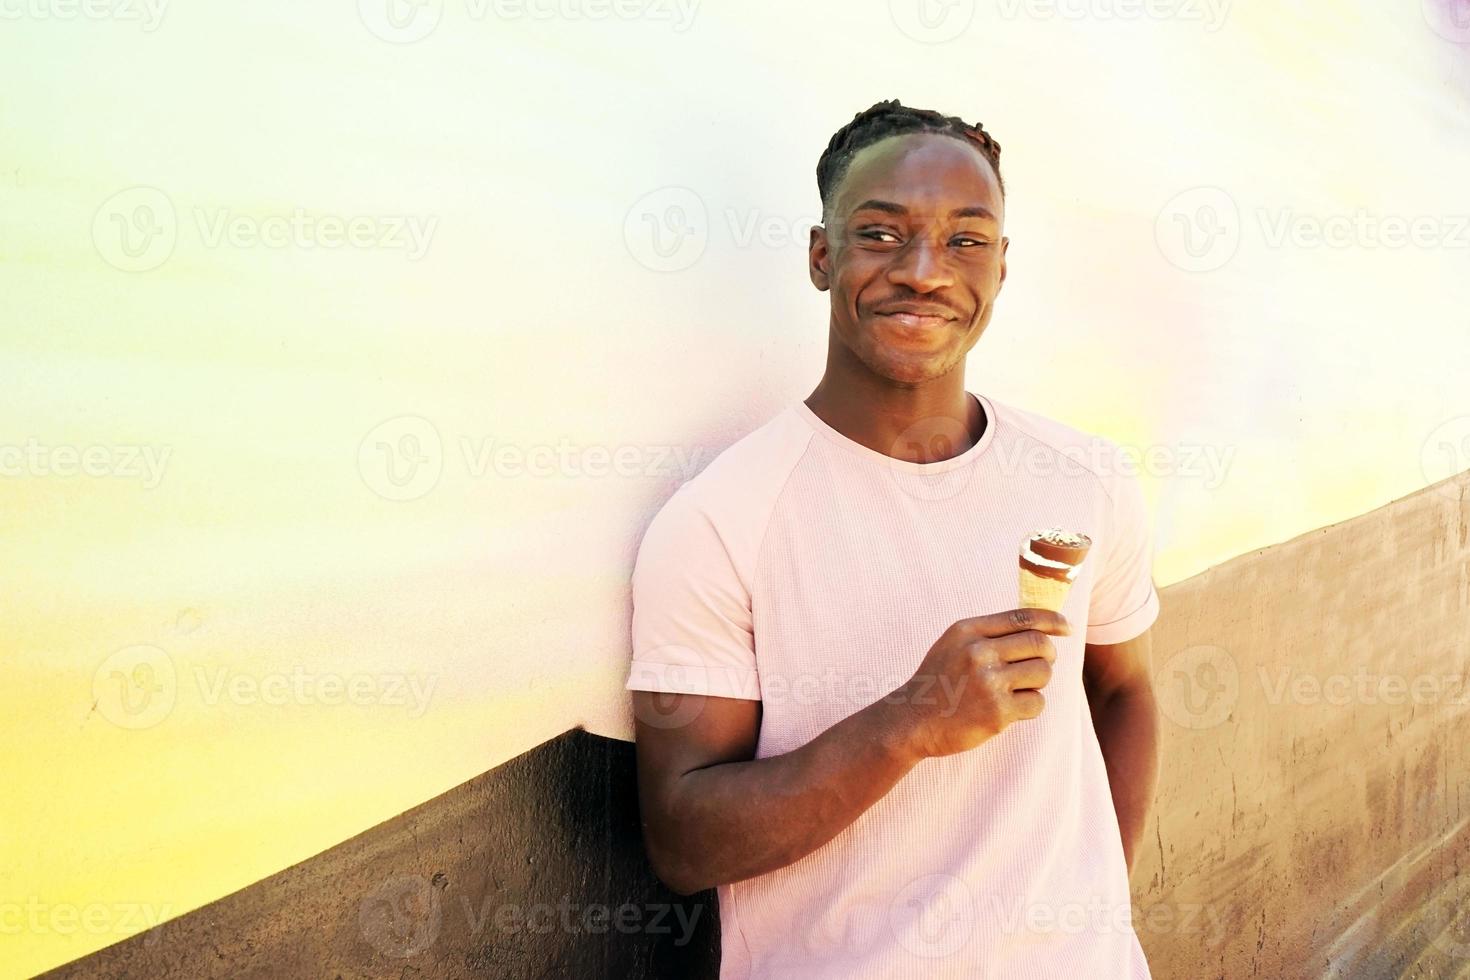 jovem negro bonito usa uma camisa rosa segura e come uma casquinha de sorvete no verão em uma parede pintada como um nascer do sol ou dia ensolarado foto